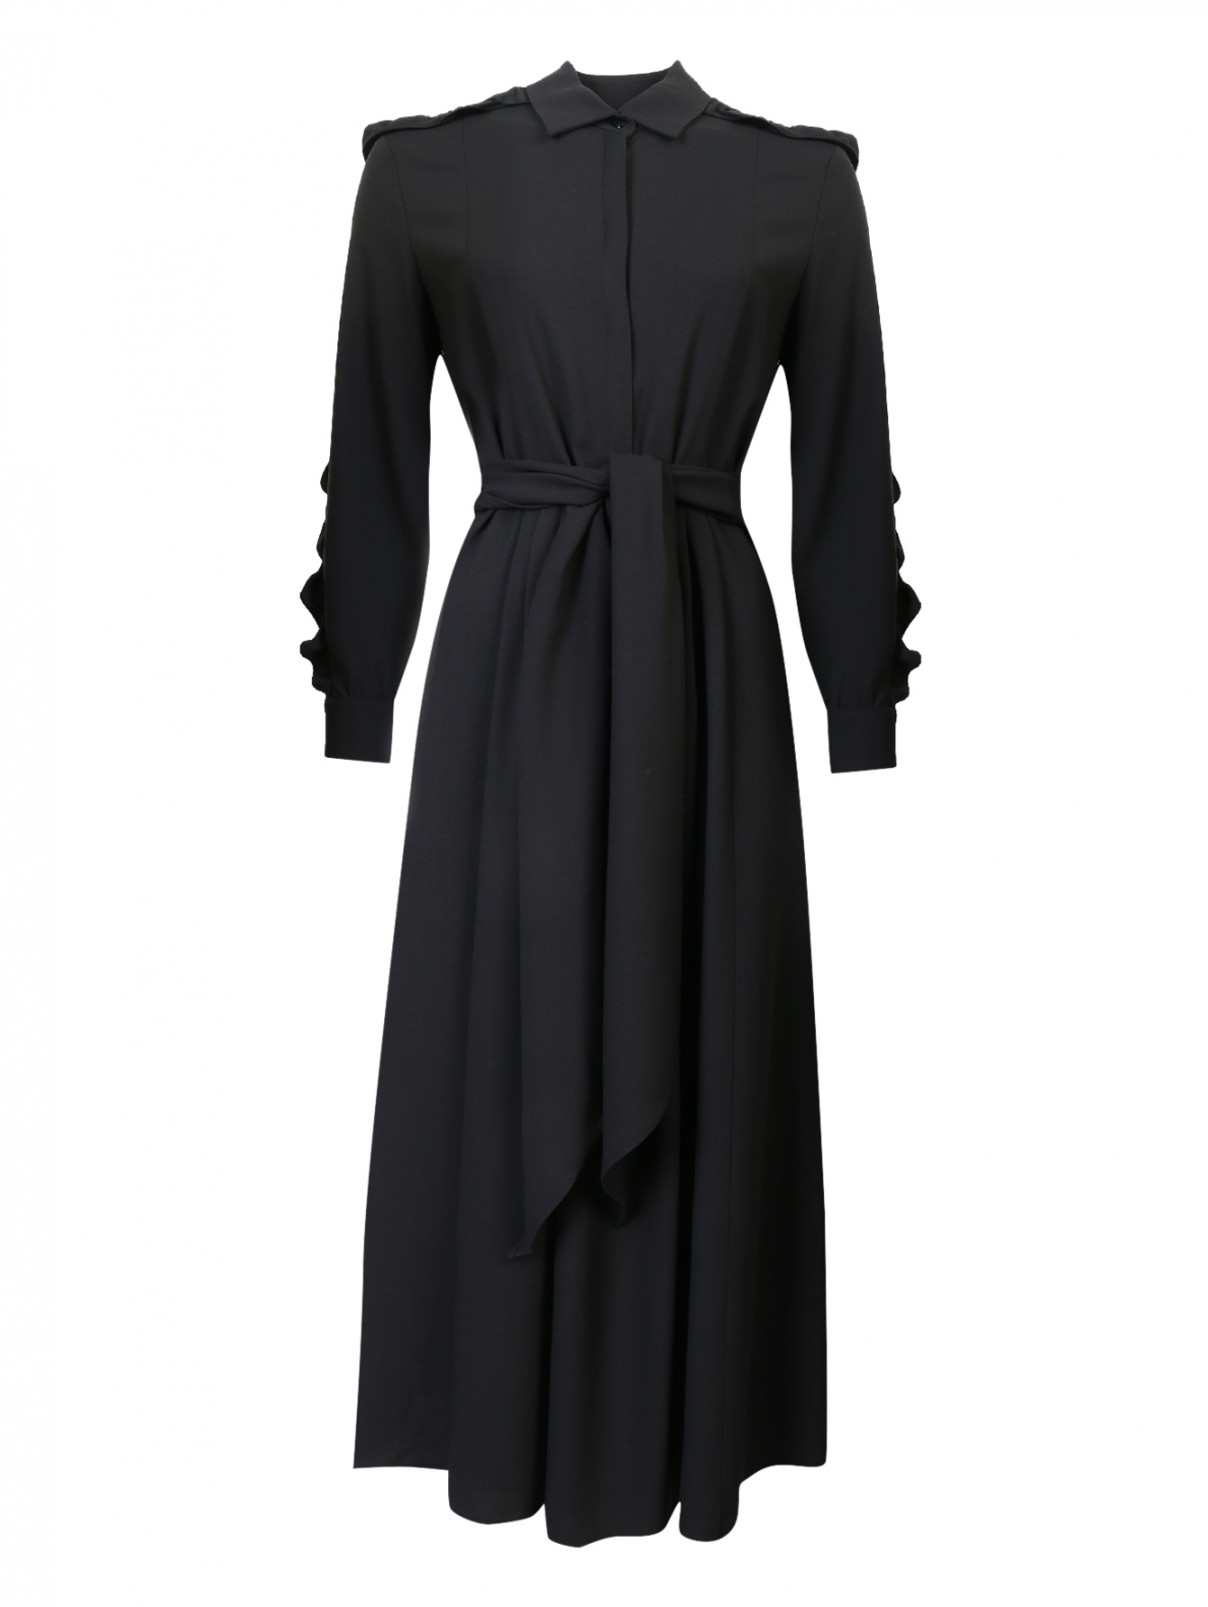 Платье с оборками на рукавах Weekend Max Mara  –  Общий вид  – Цвет:  Черный